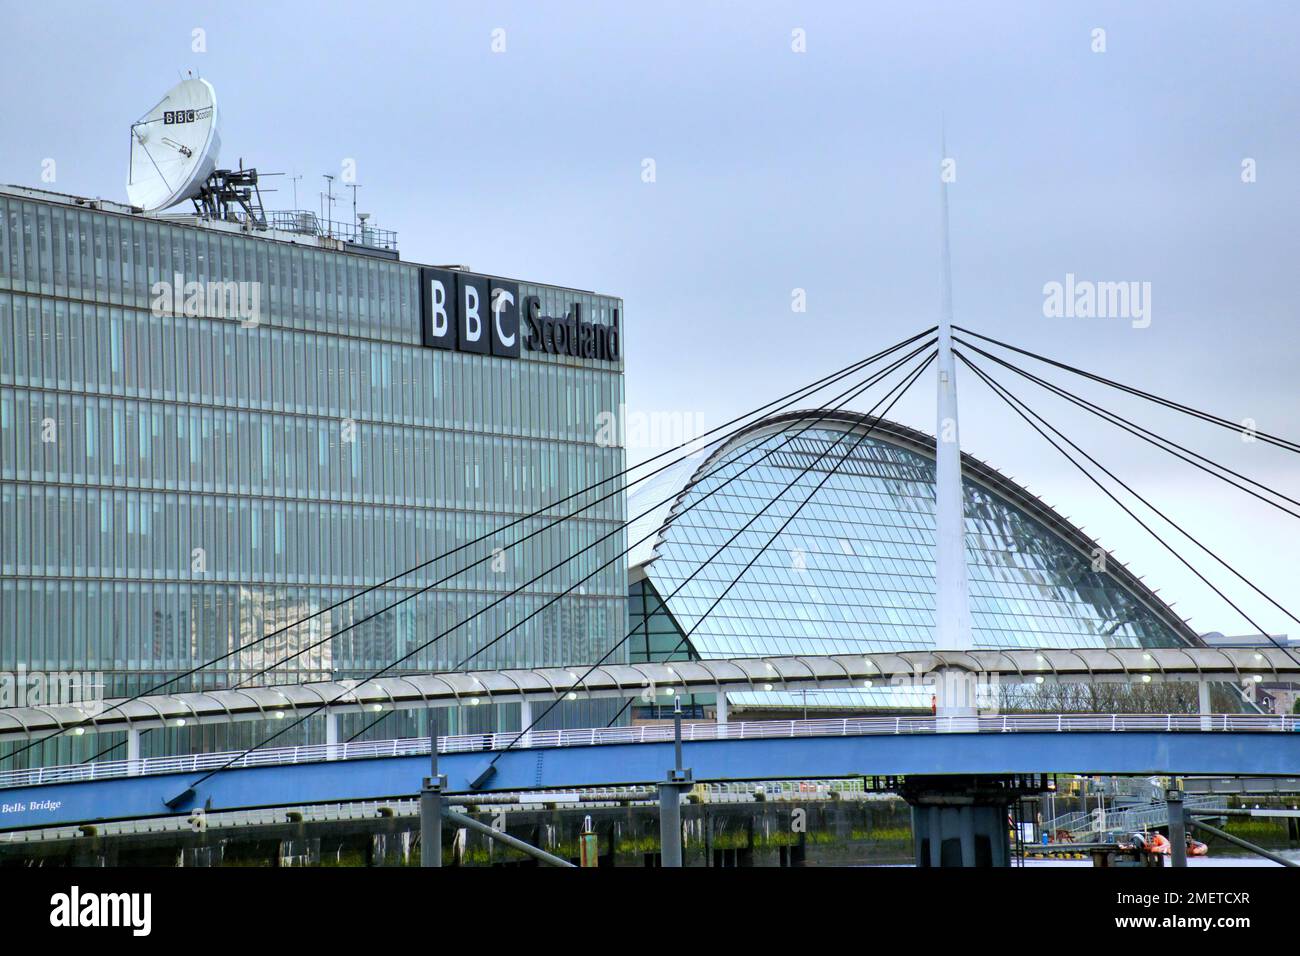 BBC Scotland pacific quay studios et le pont cloches Banque D'Images